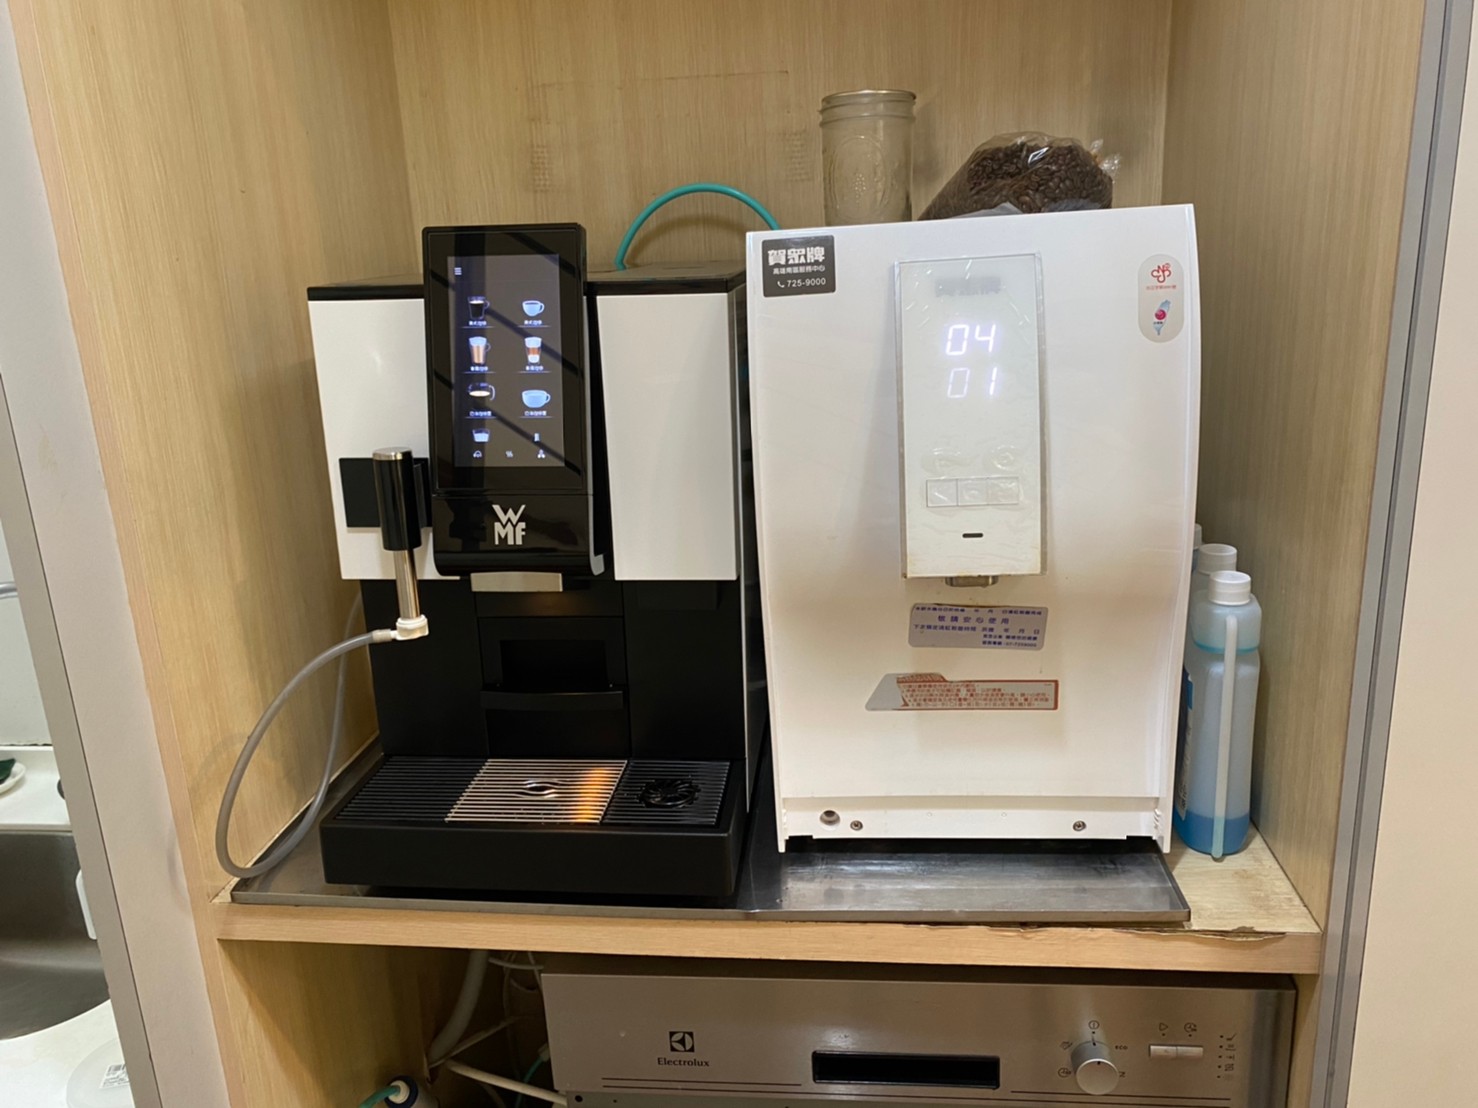 高雄 中大型辦公室 wmf 1100s 雙豆 台南 全自動咖啡機 全家便利商店咖啡機 WMF